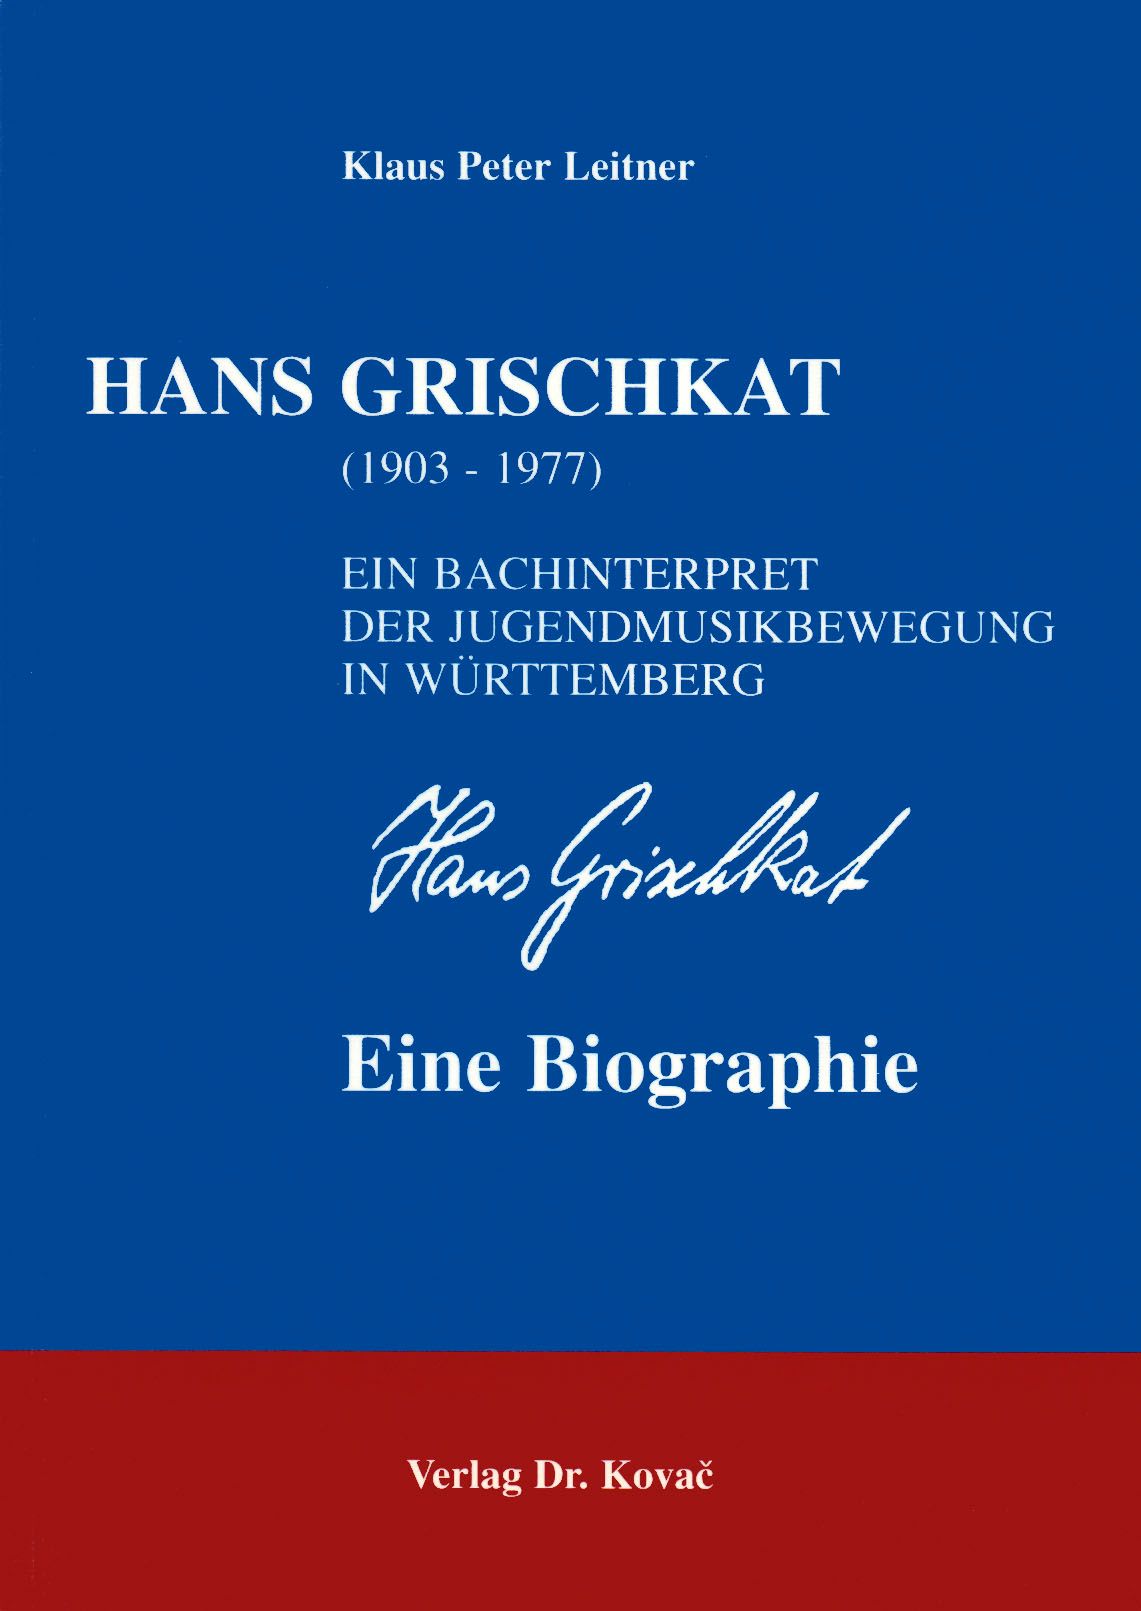 Klaus Peter Leitner, «Hans Grischkat (1903-1977) - Ein Bachinterpret der Jugendmusikbewegung in Württemberg - eine Biographie», Schriften zur Kultur­wissenschaft, Band 32, Hamburg 2000, 432 Seiten, ISBN 978-3-8300-0122-5